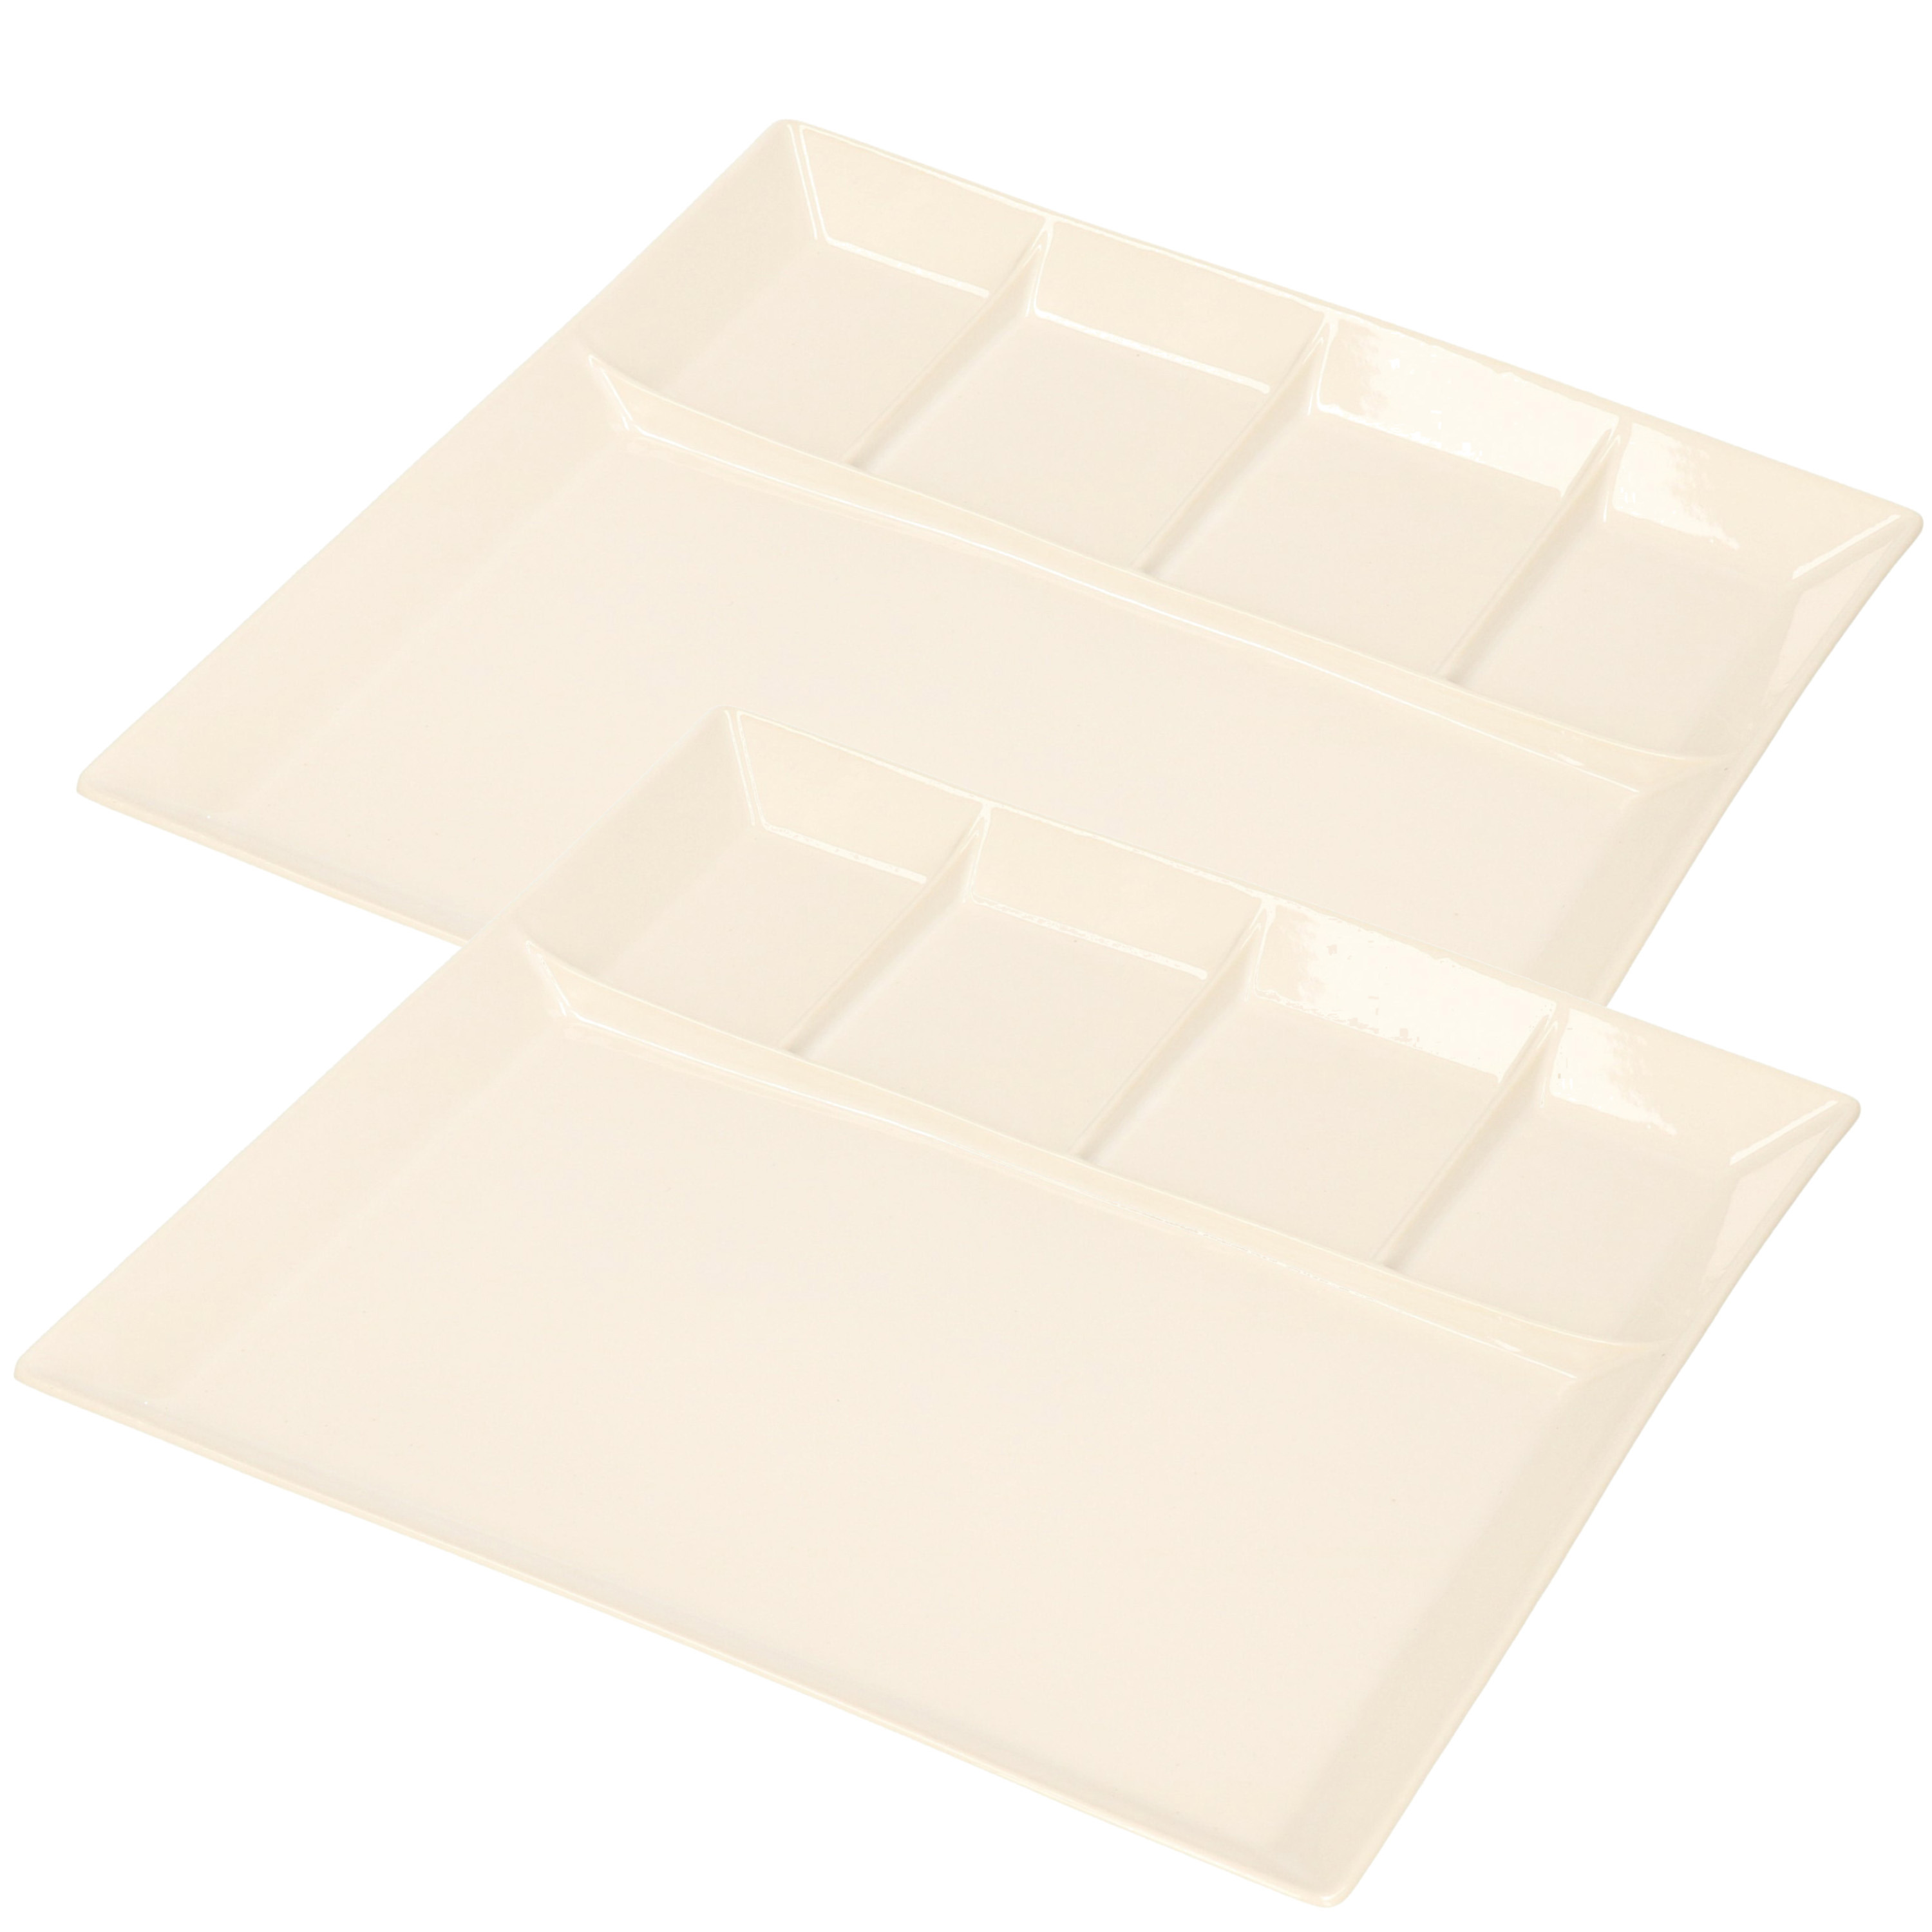 4x stuks wit fondue-gourmet bord 5-vaks vierkant aardewerk 24 cm